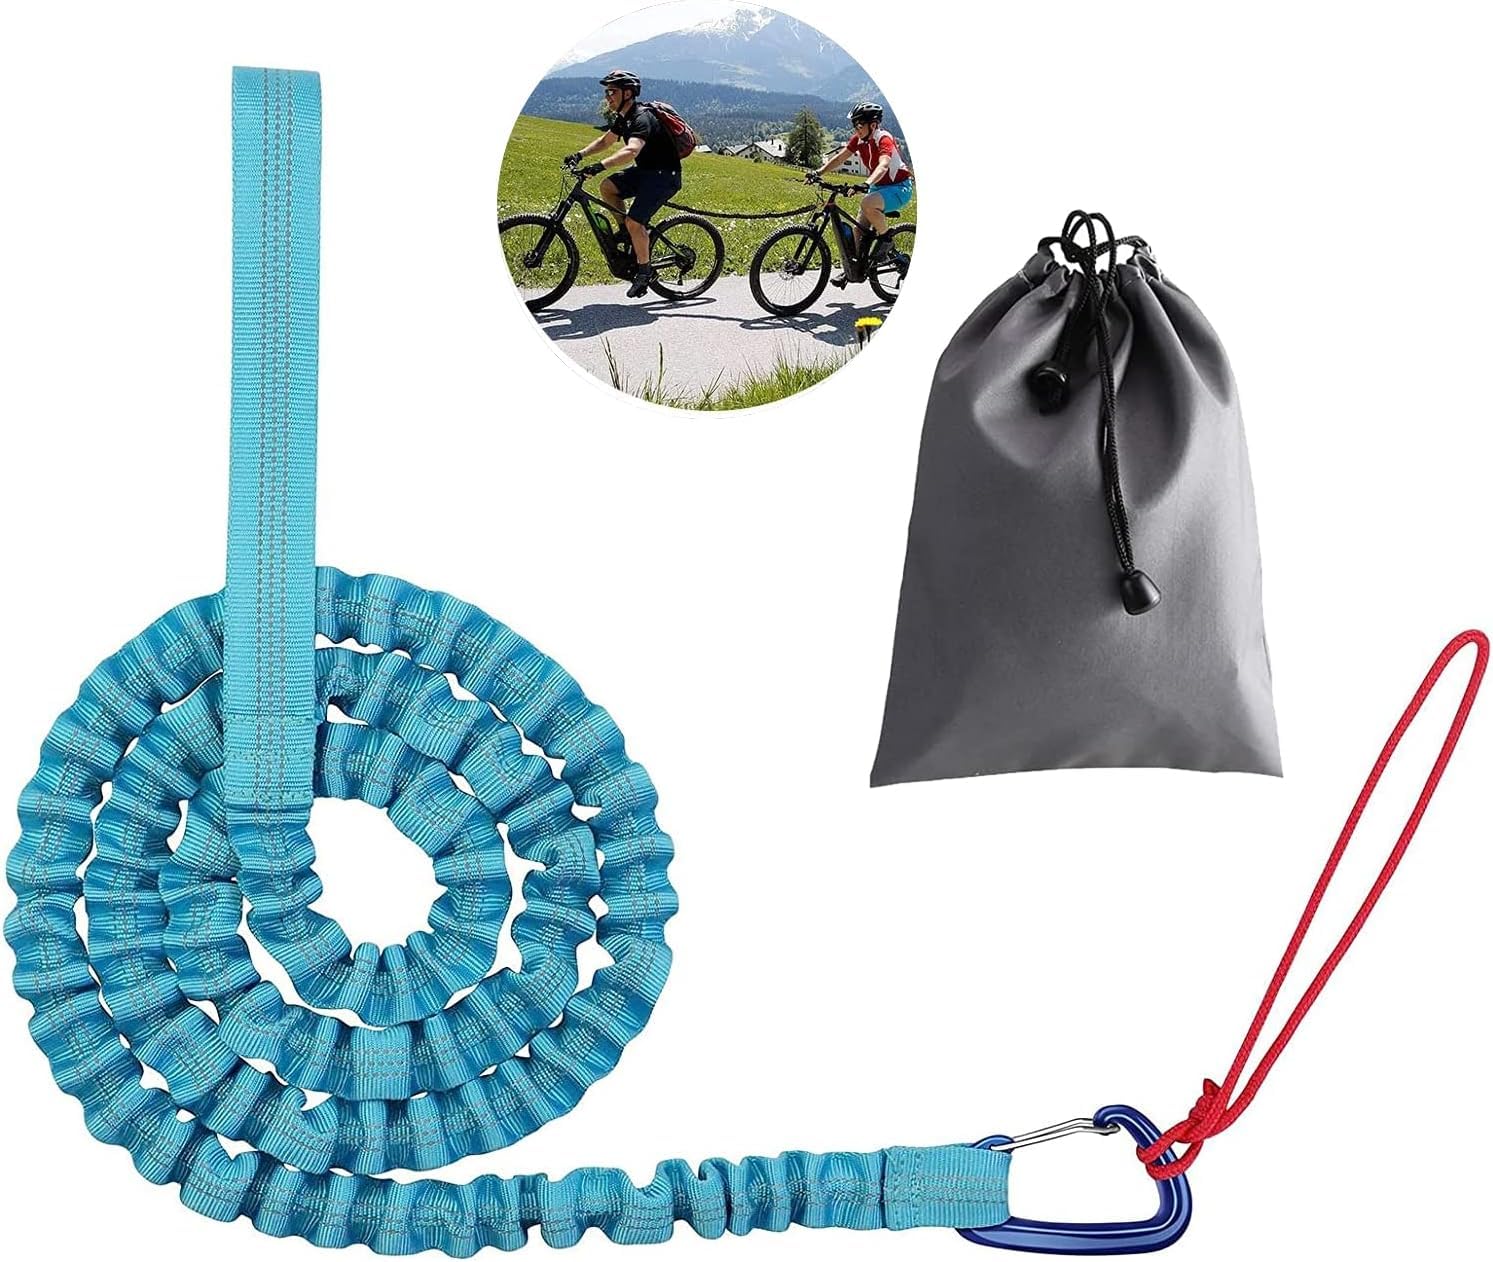 Kinder Fahrrad Abschleppseil, 3 Meter Fahrrad-Abschleppgurt Elastisch -Tragfähigkeit 500 lb, Elastisch Recovery Tow Strap für Kinder Fahrrad Oder Mountainbike (Blau) von Txeouse